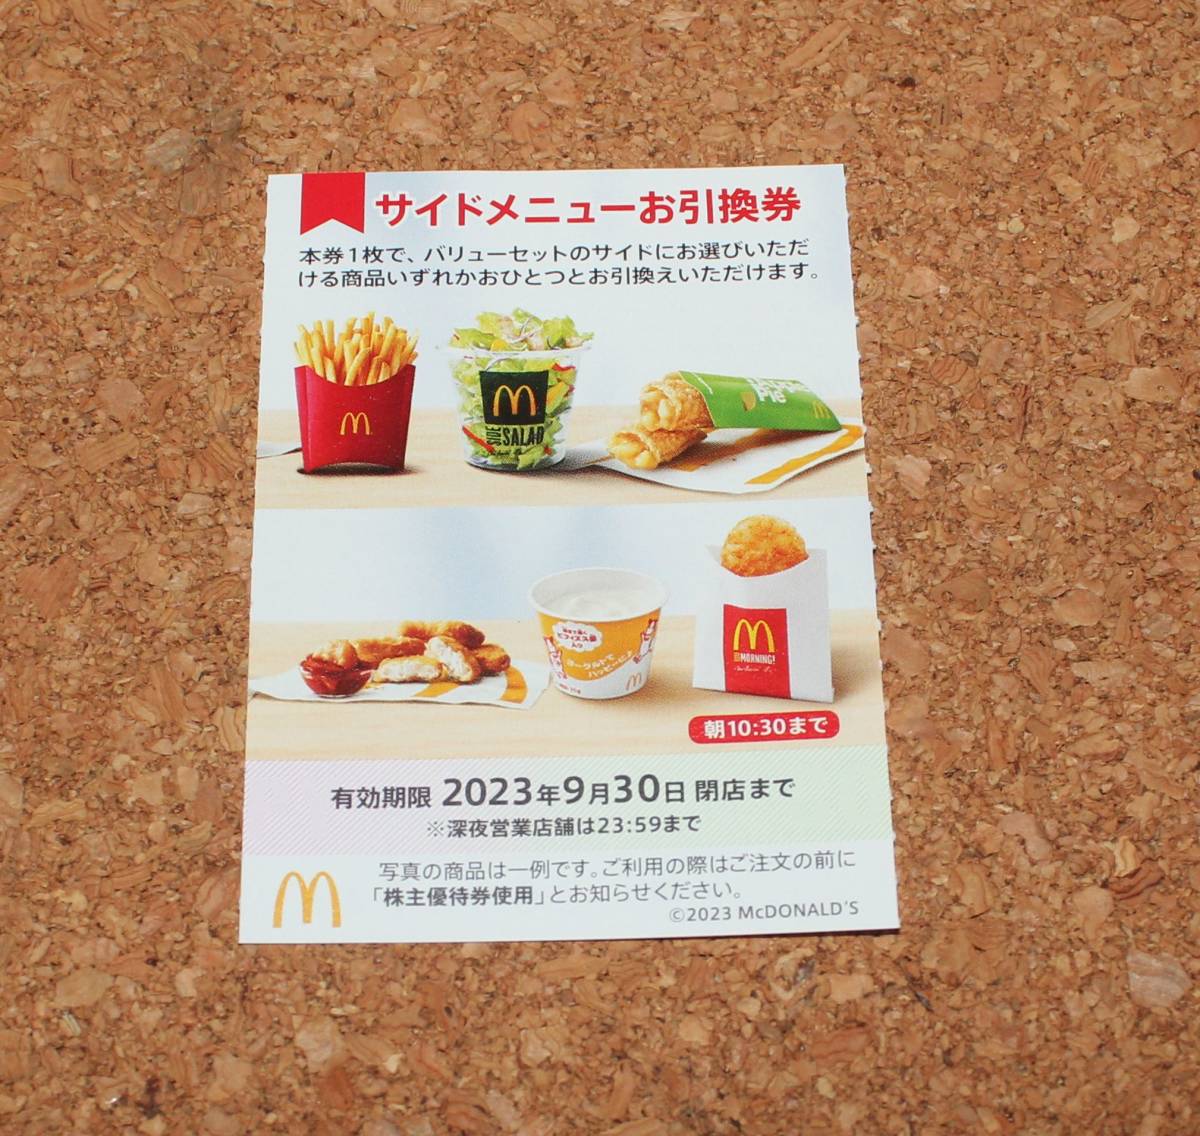 10 шт. комплект McDonald's акционер гостеприимство боковой меню талон 2023 год 9 месяц 30 день . бесплатная доставка 